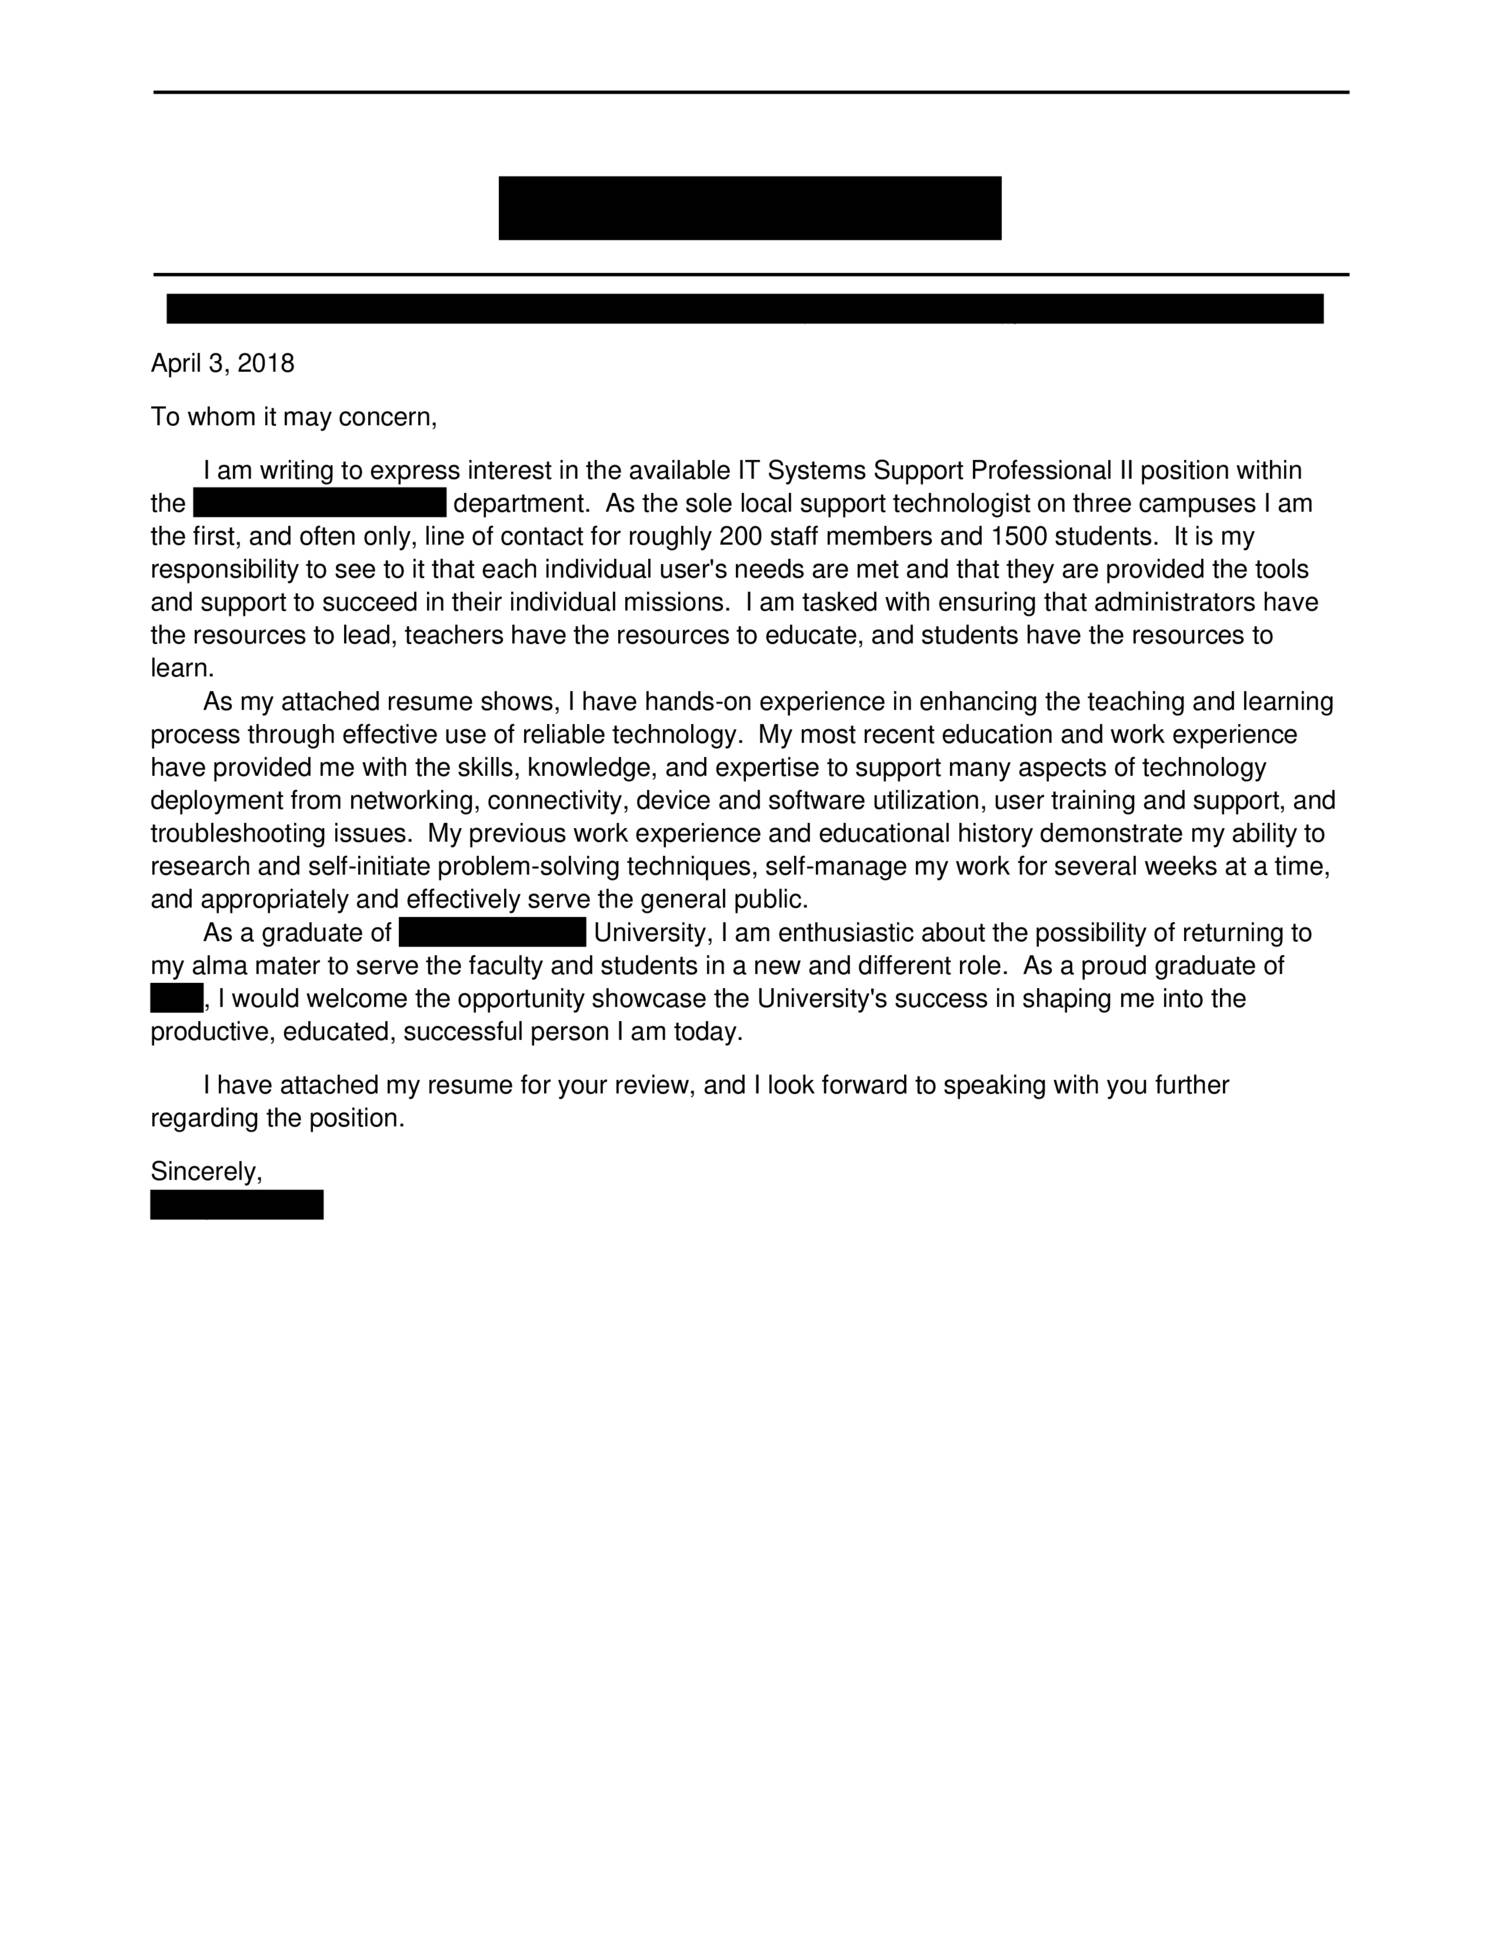 cover letter for resume reddit